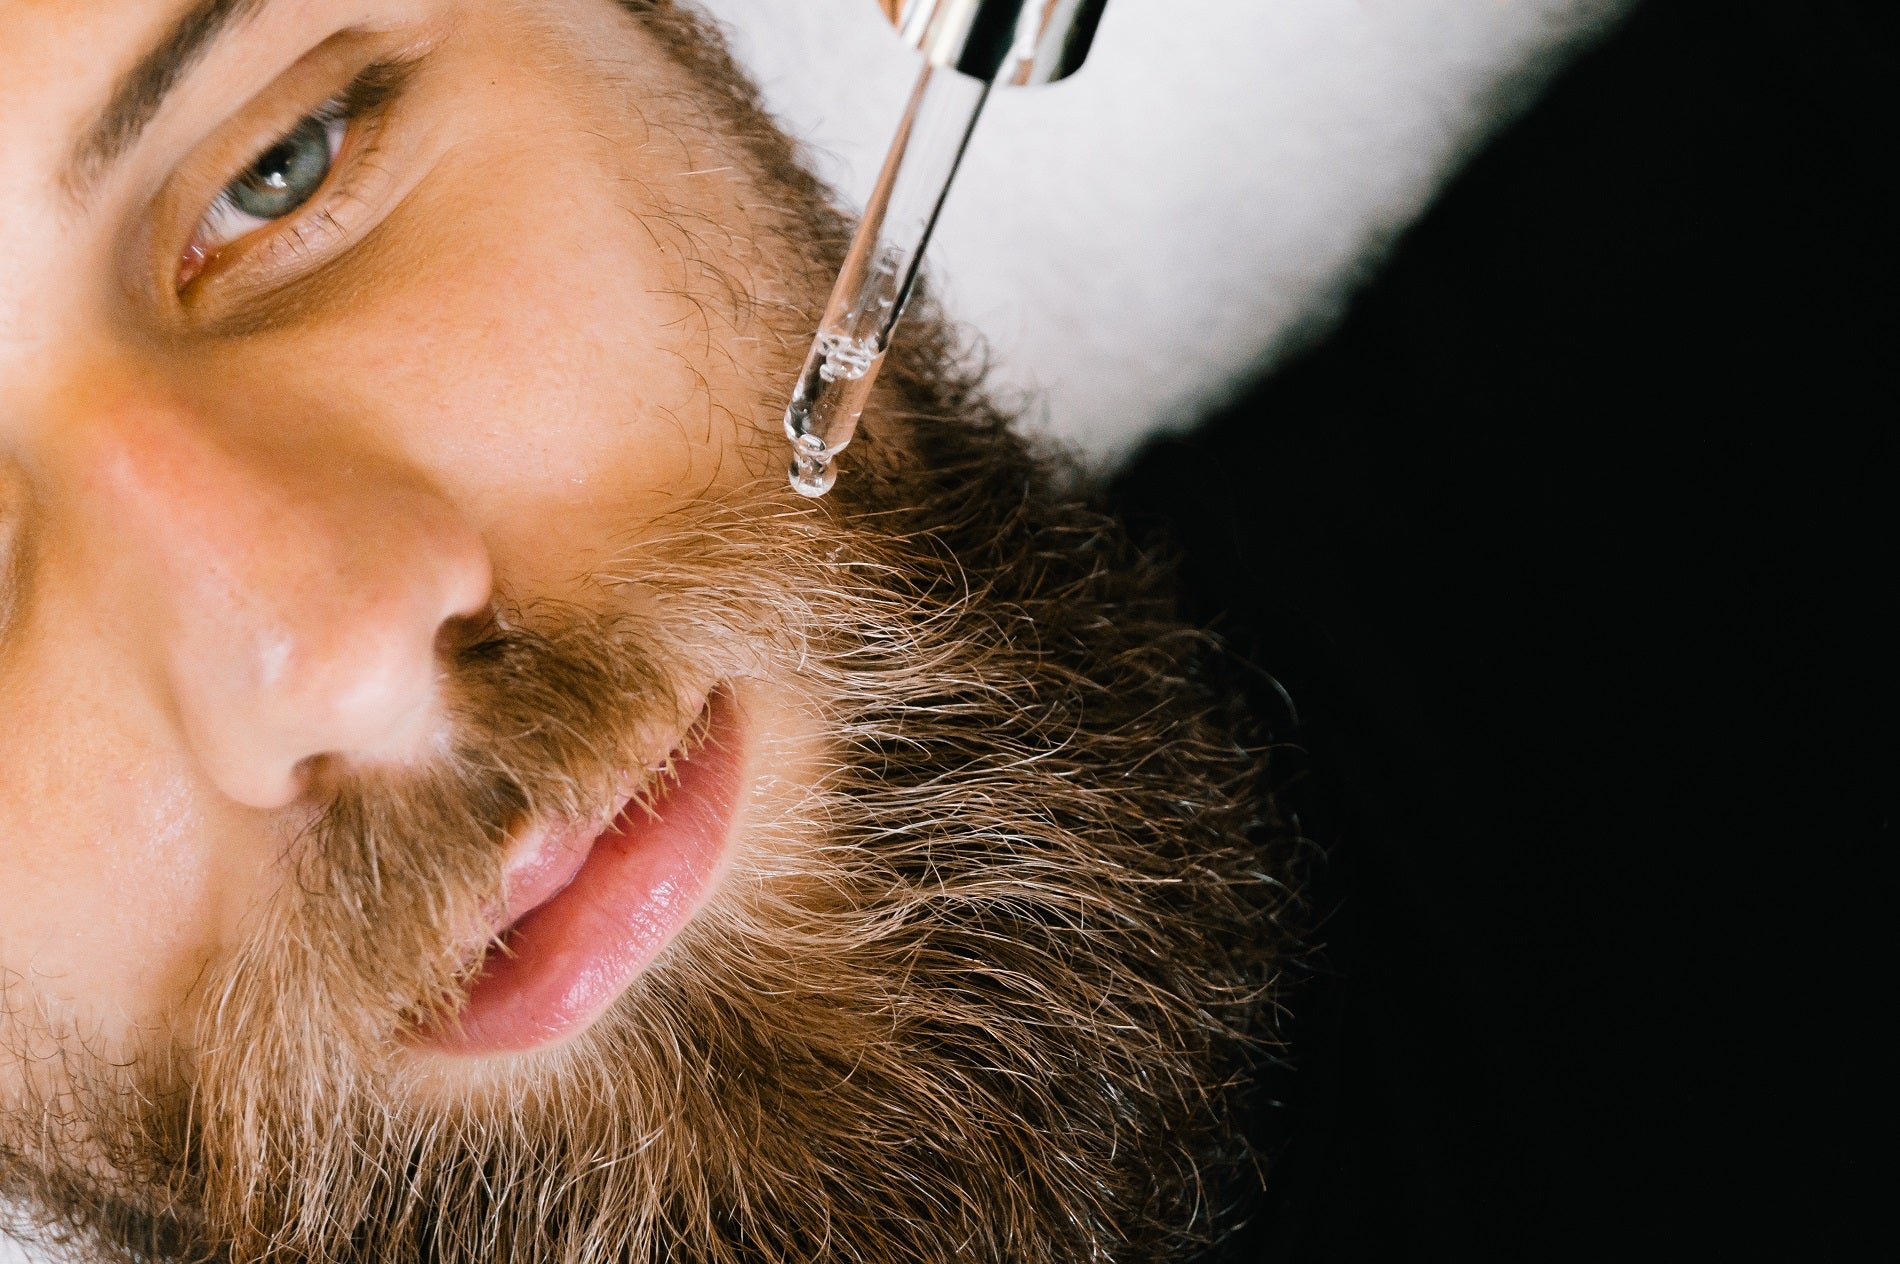 Can Beard Oil Help With Beard Growth?